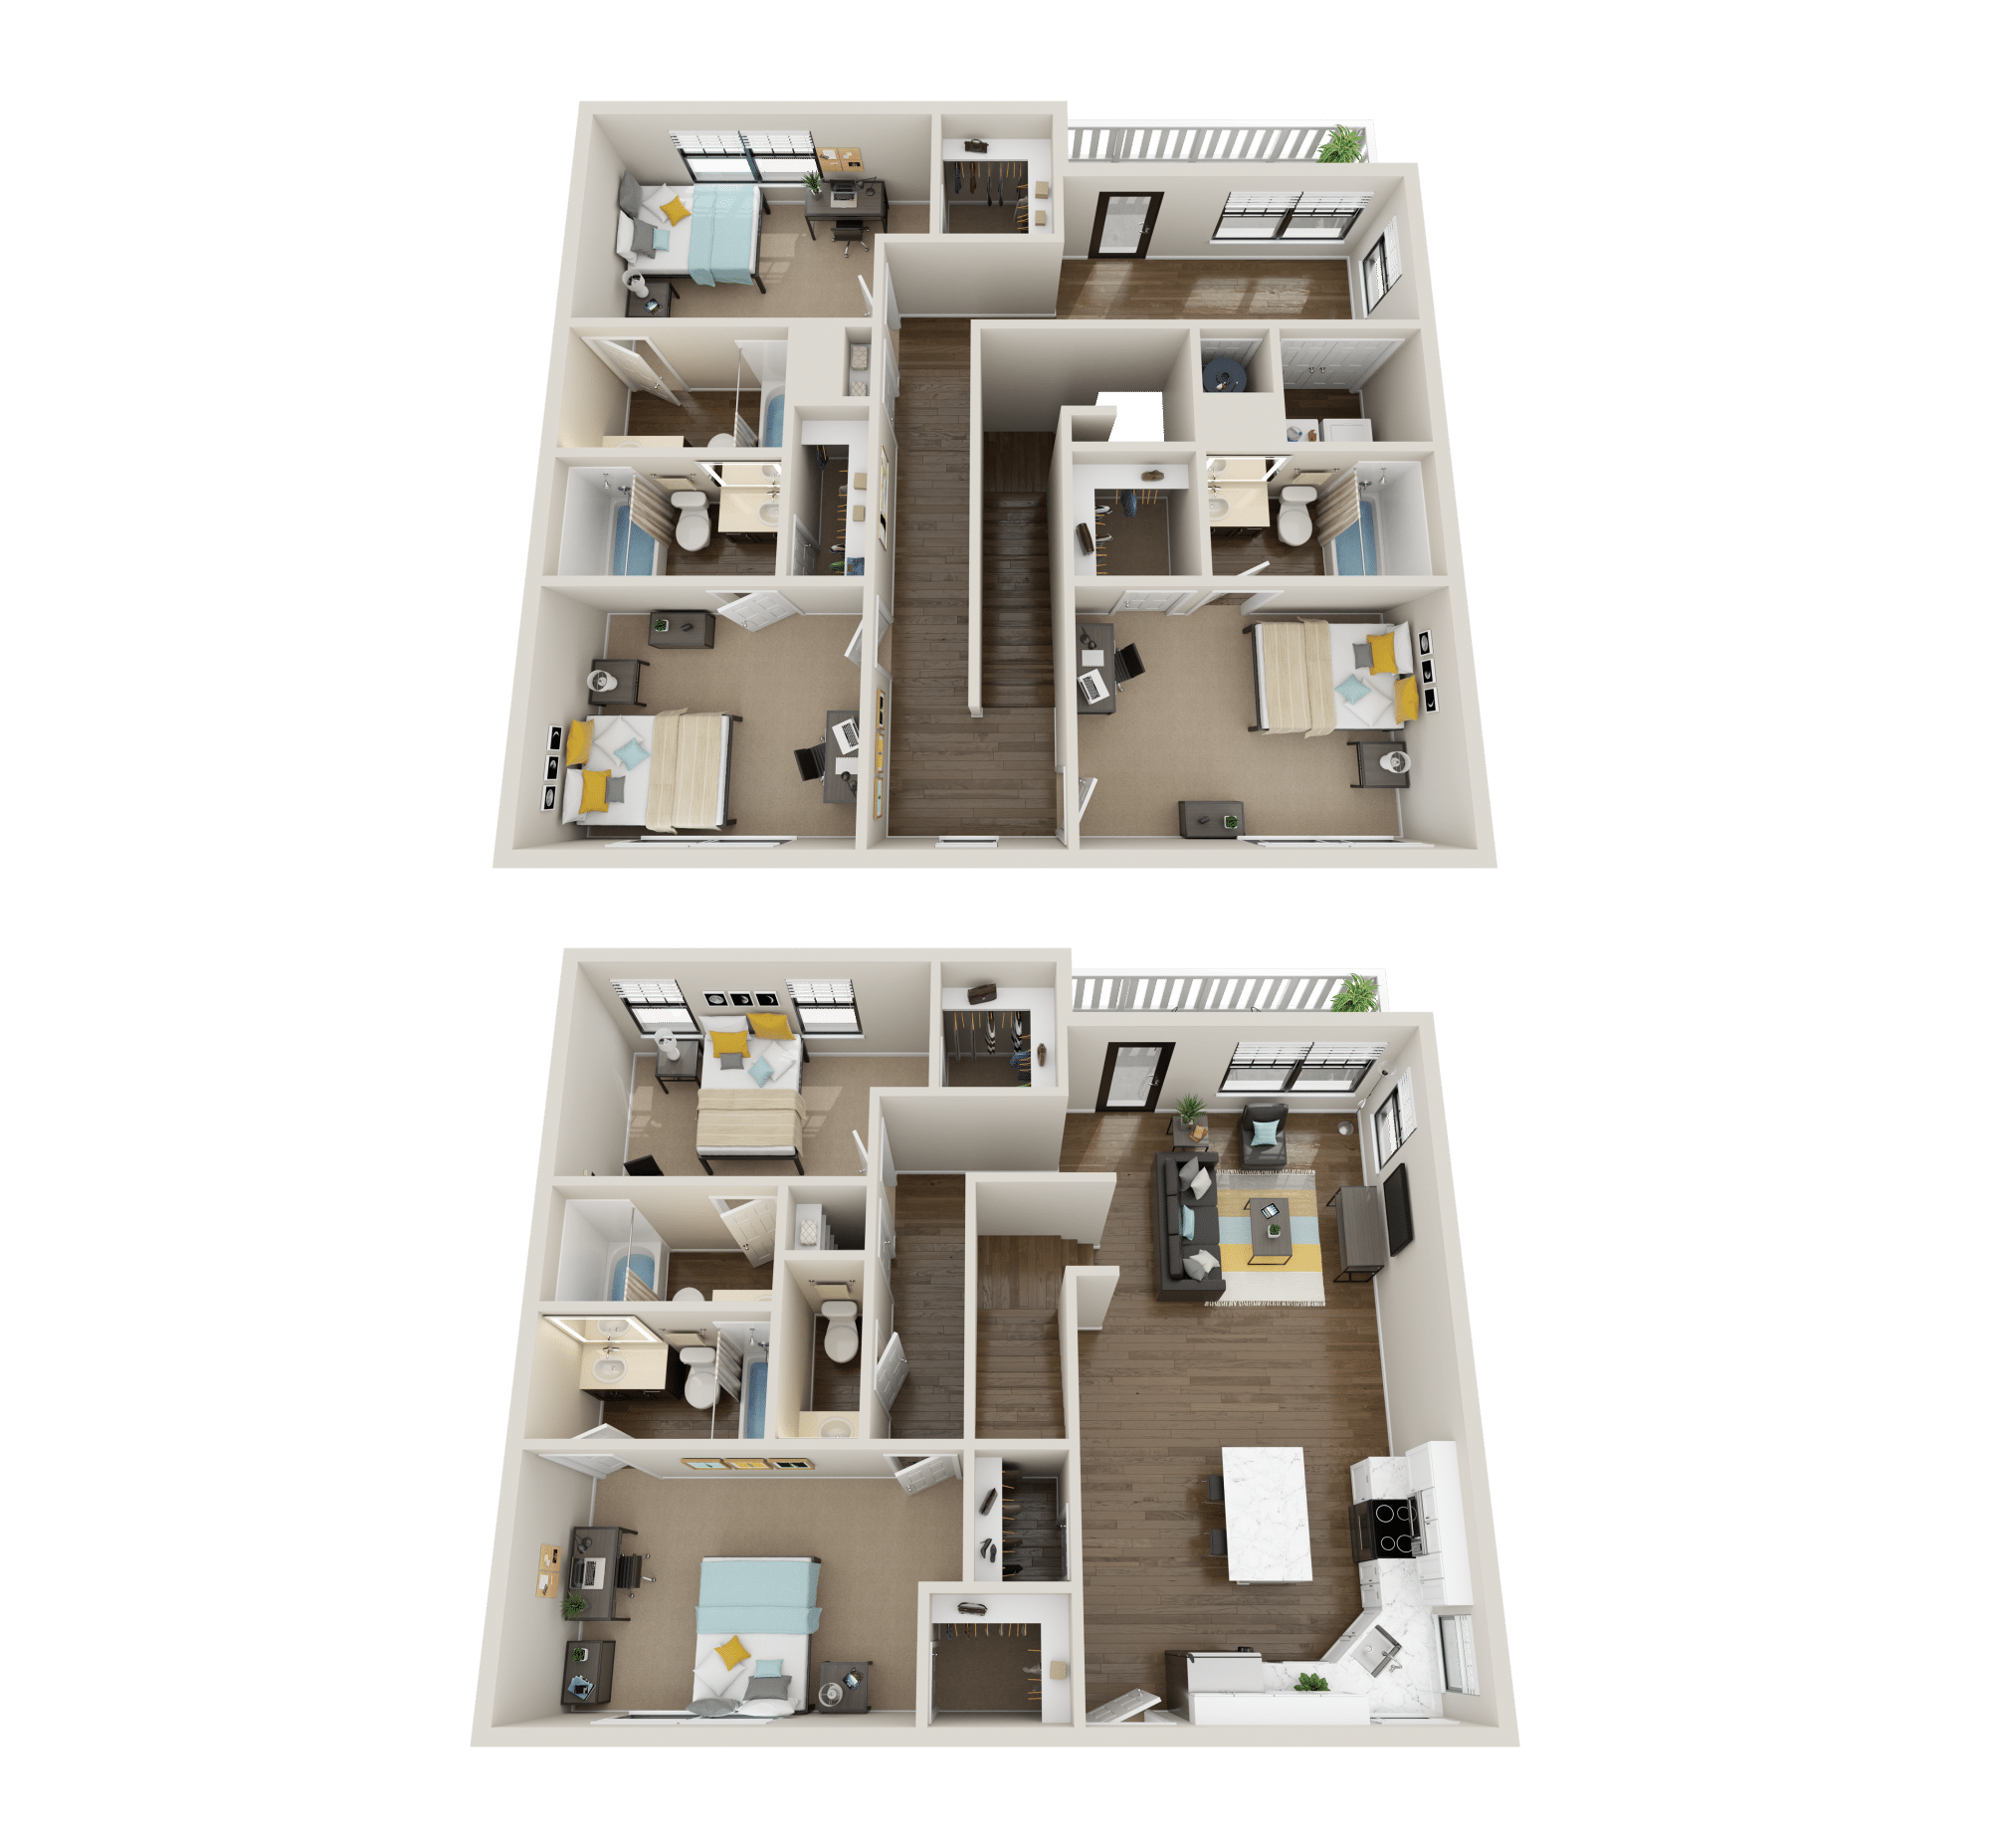 5x5.5 premium floor plan collective at clemson off campus apartments